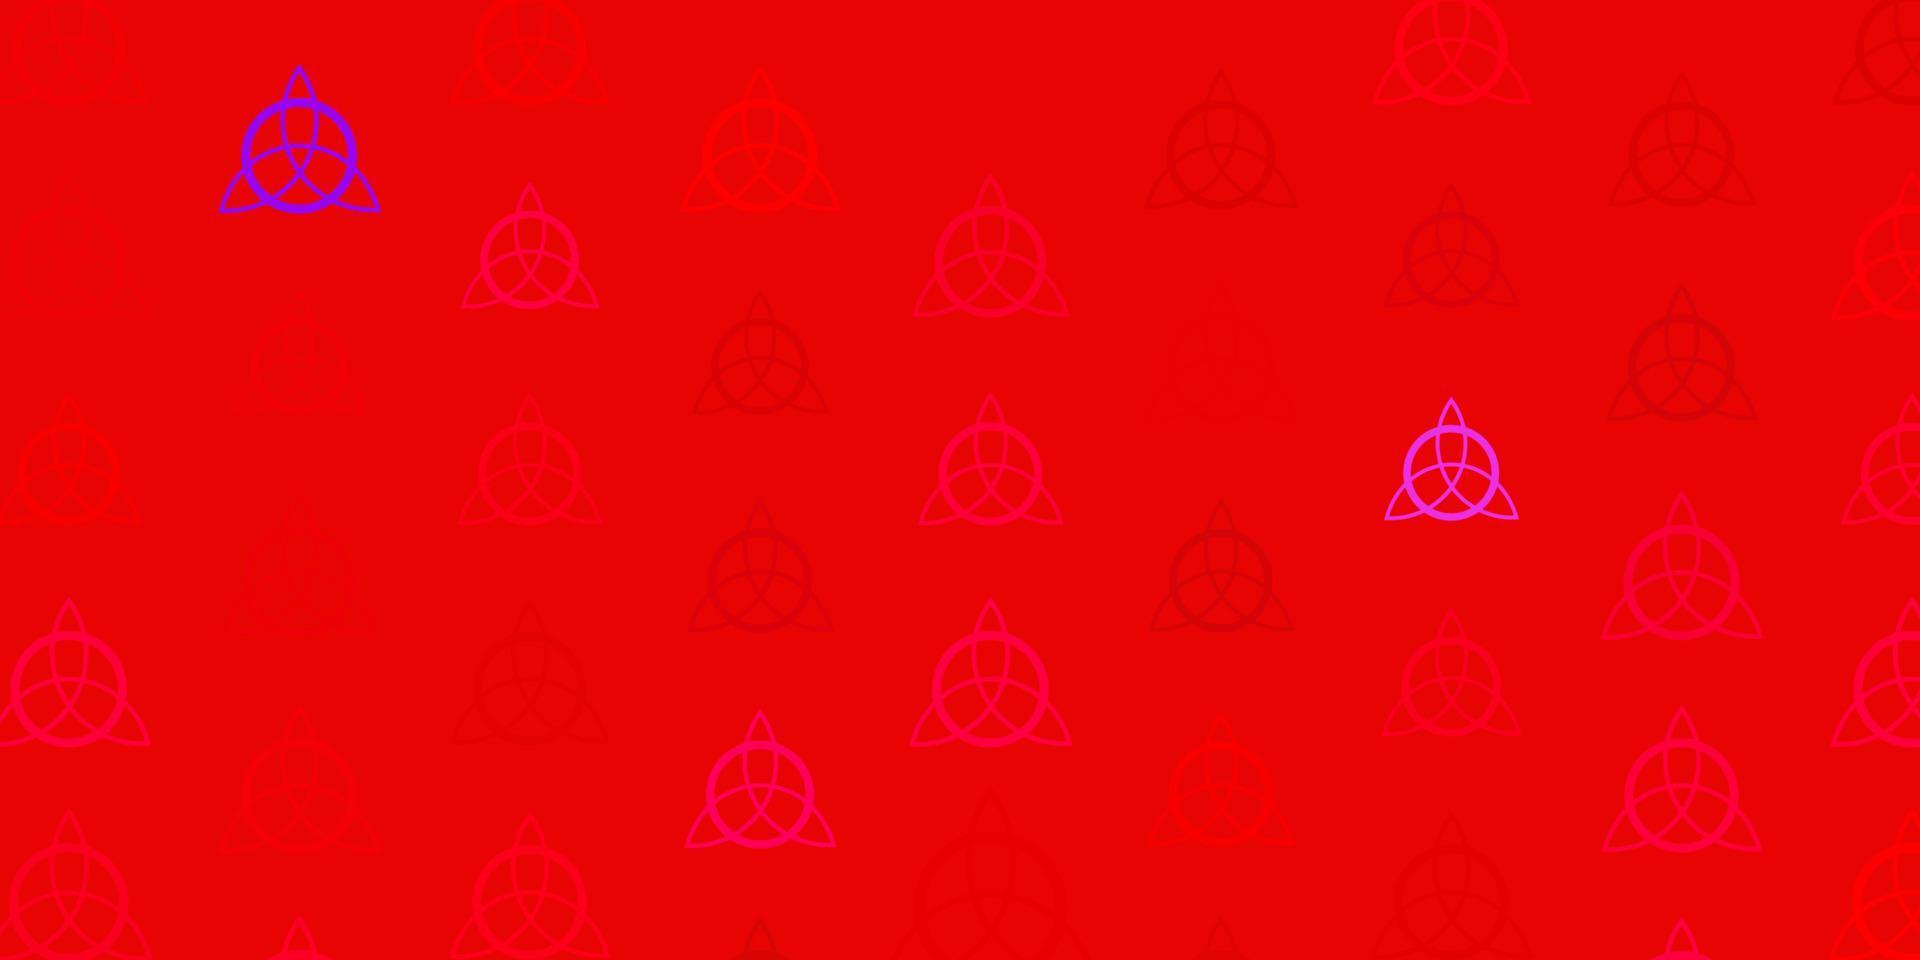 padrão de vetor rosa claro com elementos mágicos.